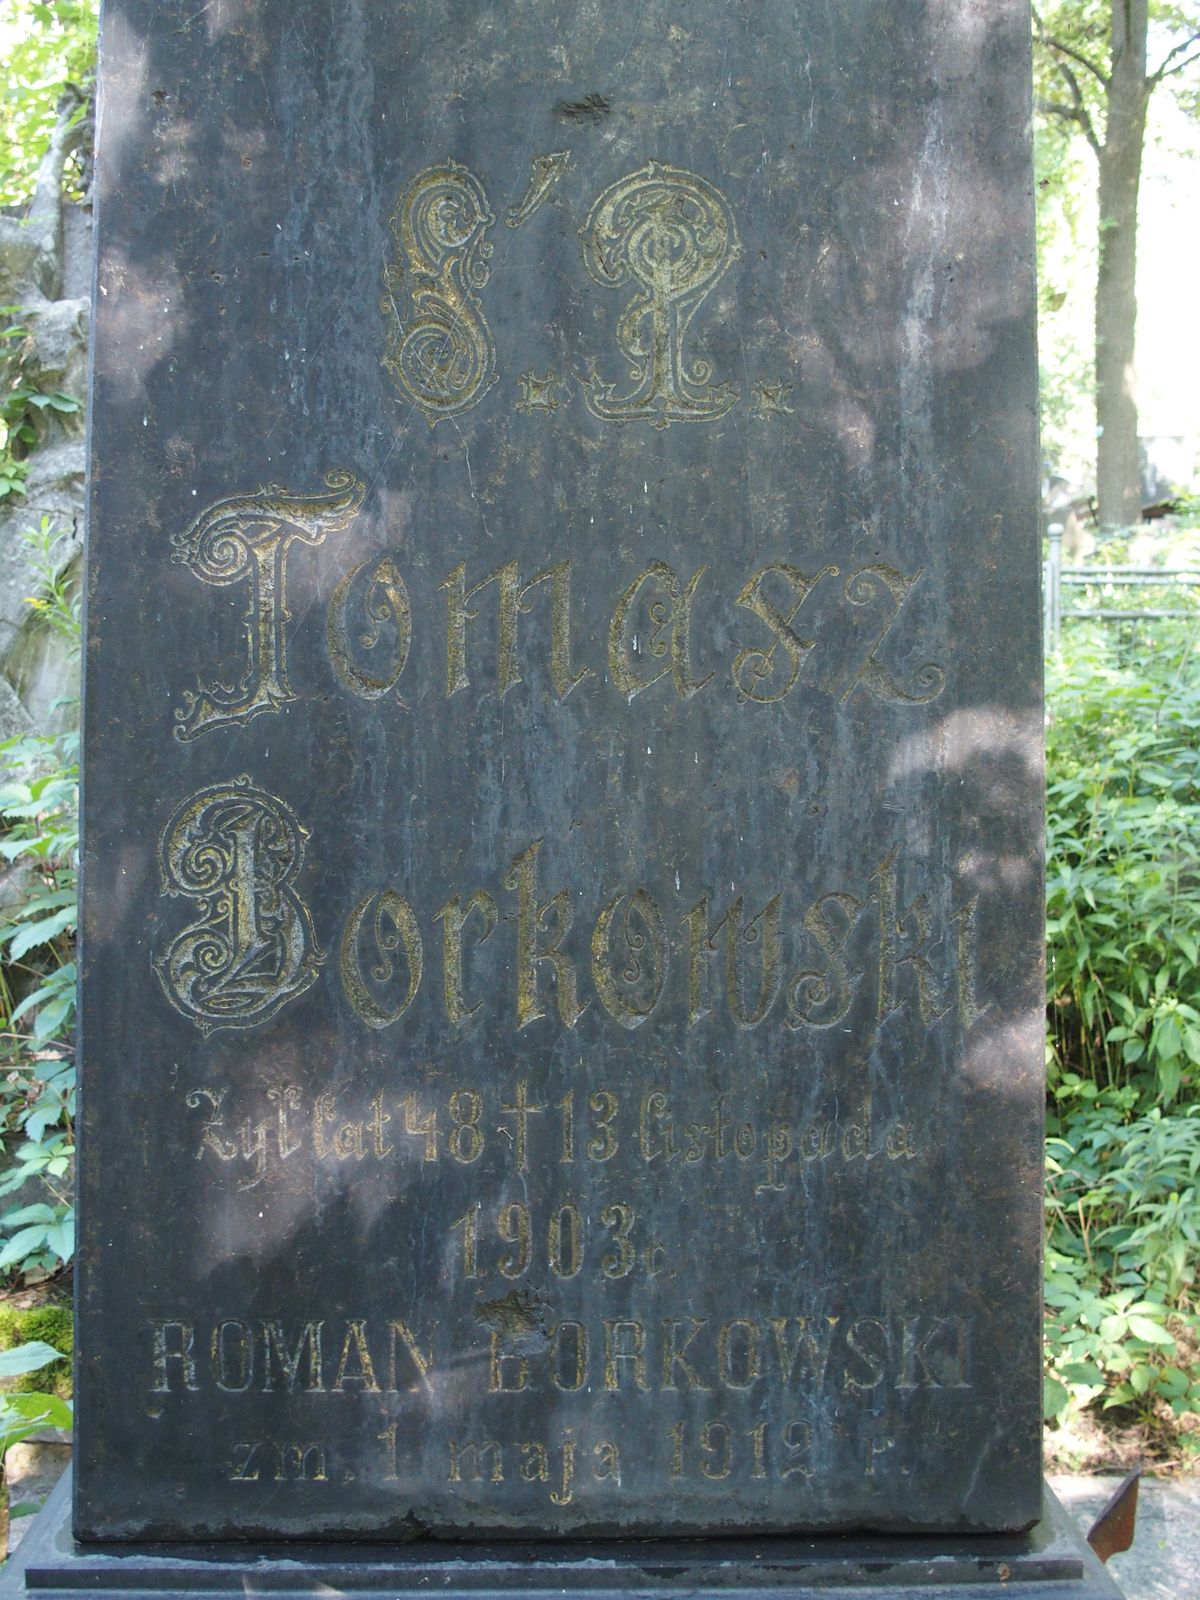 Gravestone inscription of Maria Kull, Roman Borkowski, Tomasz Borkowski, Bajkova cemetery, Kyiv, as of 2021